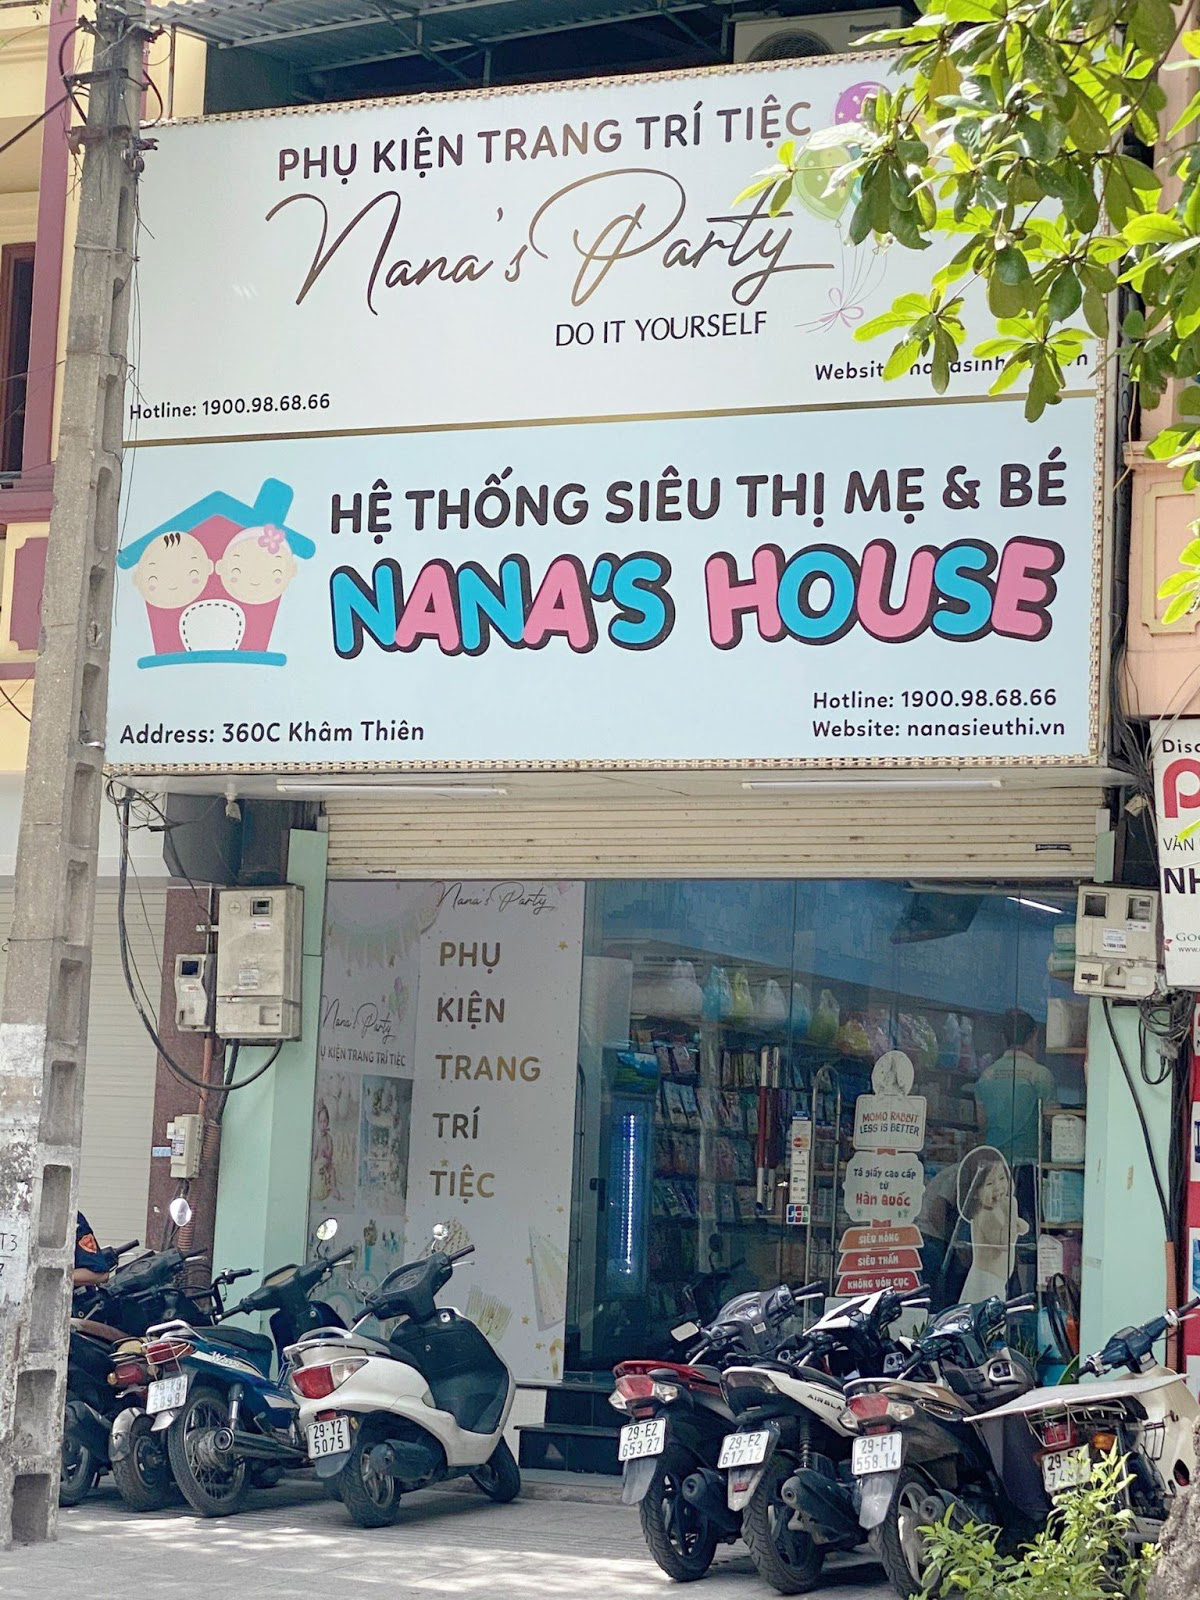 Nana’s House chuyển mình mạnh mẽ từ siêu thị bỉm sữa sang hệ thống siêu thị ngoại nhập - Ảnh 1.